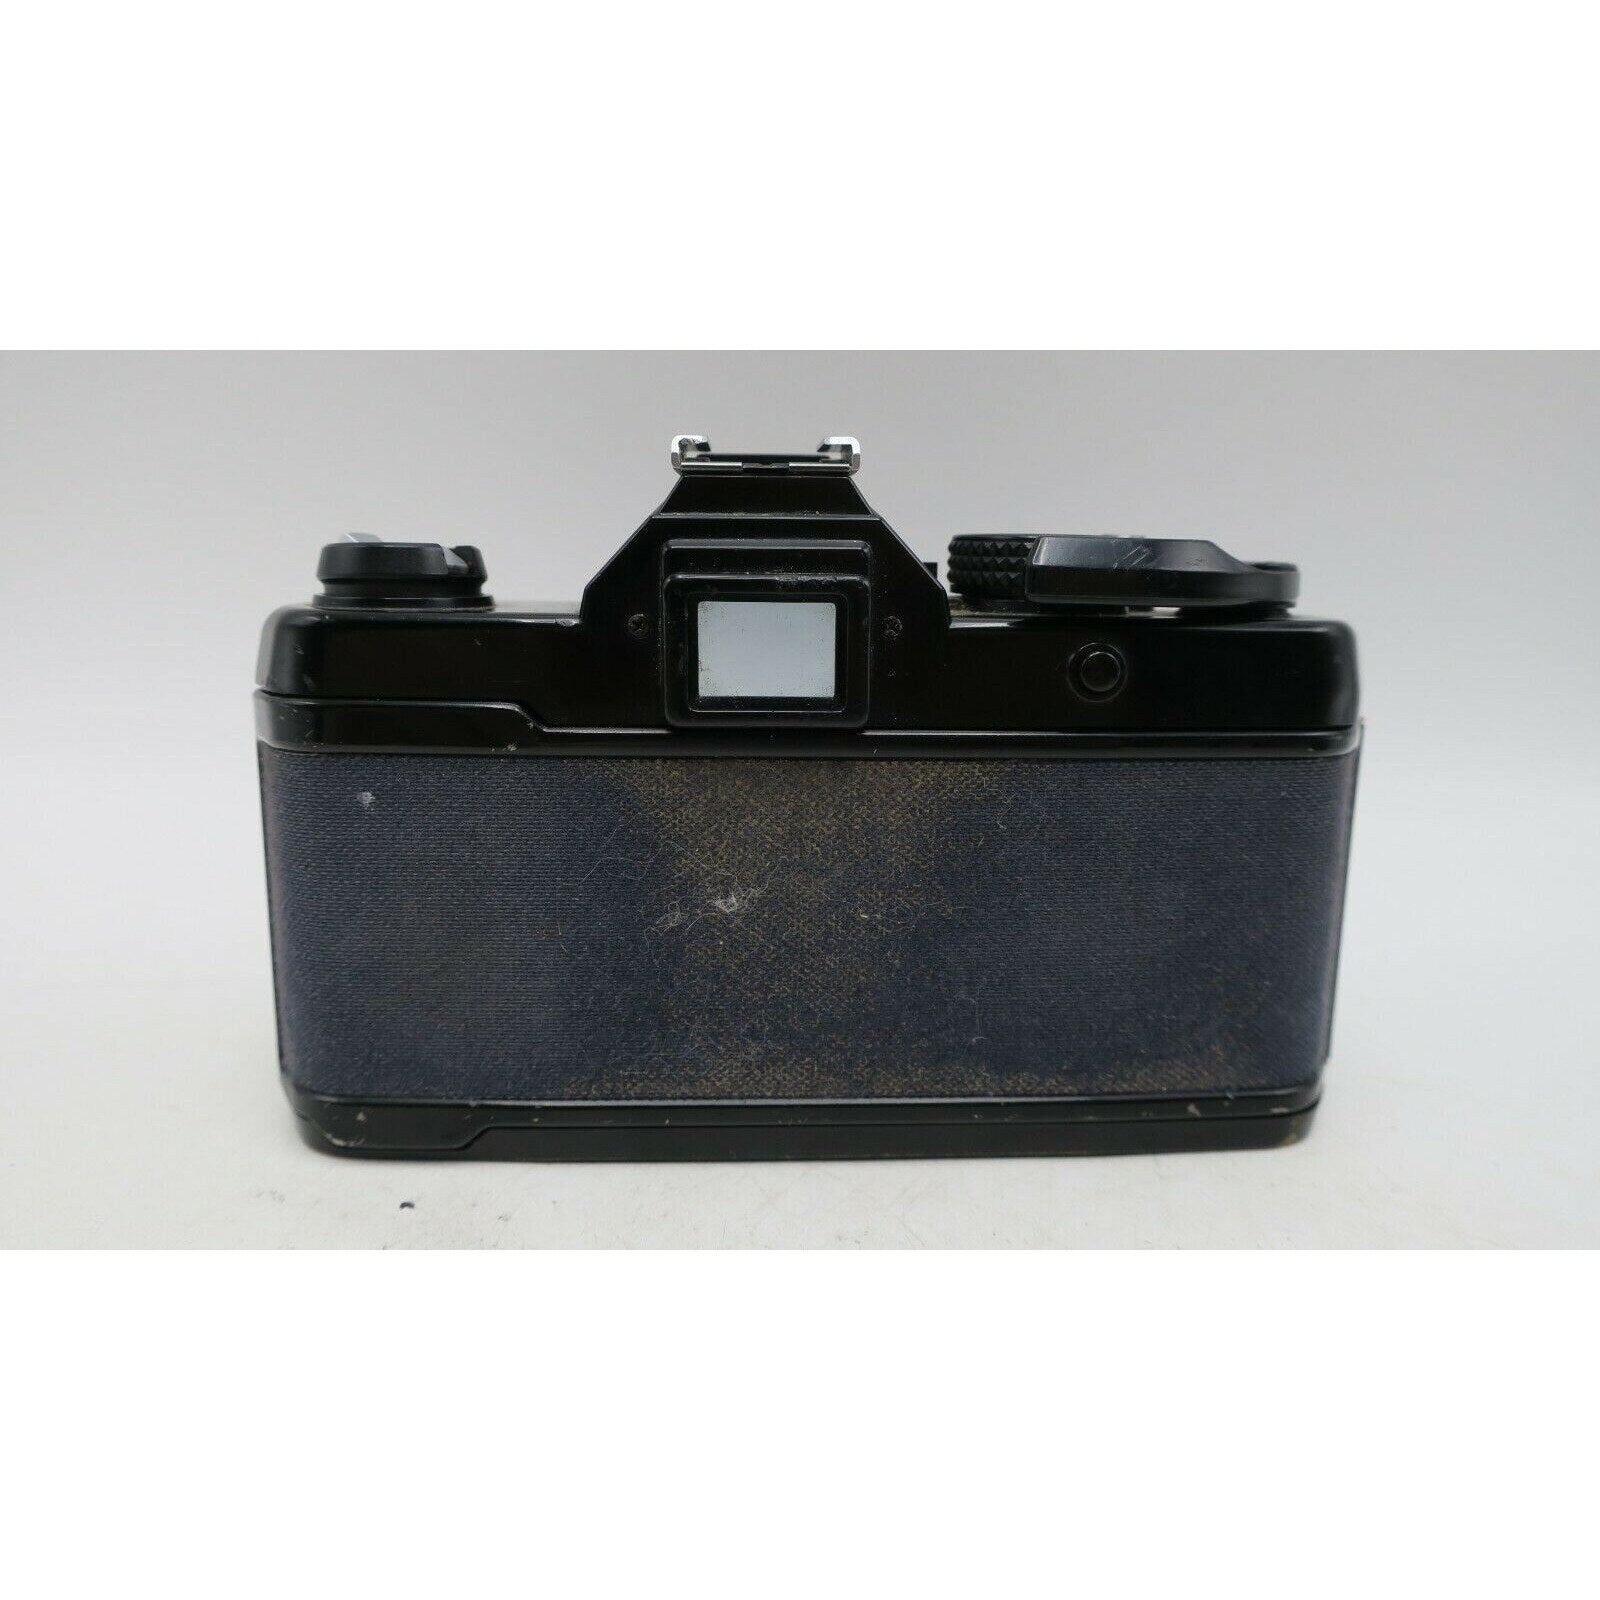 Yashica FX-3 35mm Film SLR Camera Body - Black Body Only